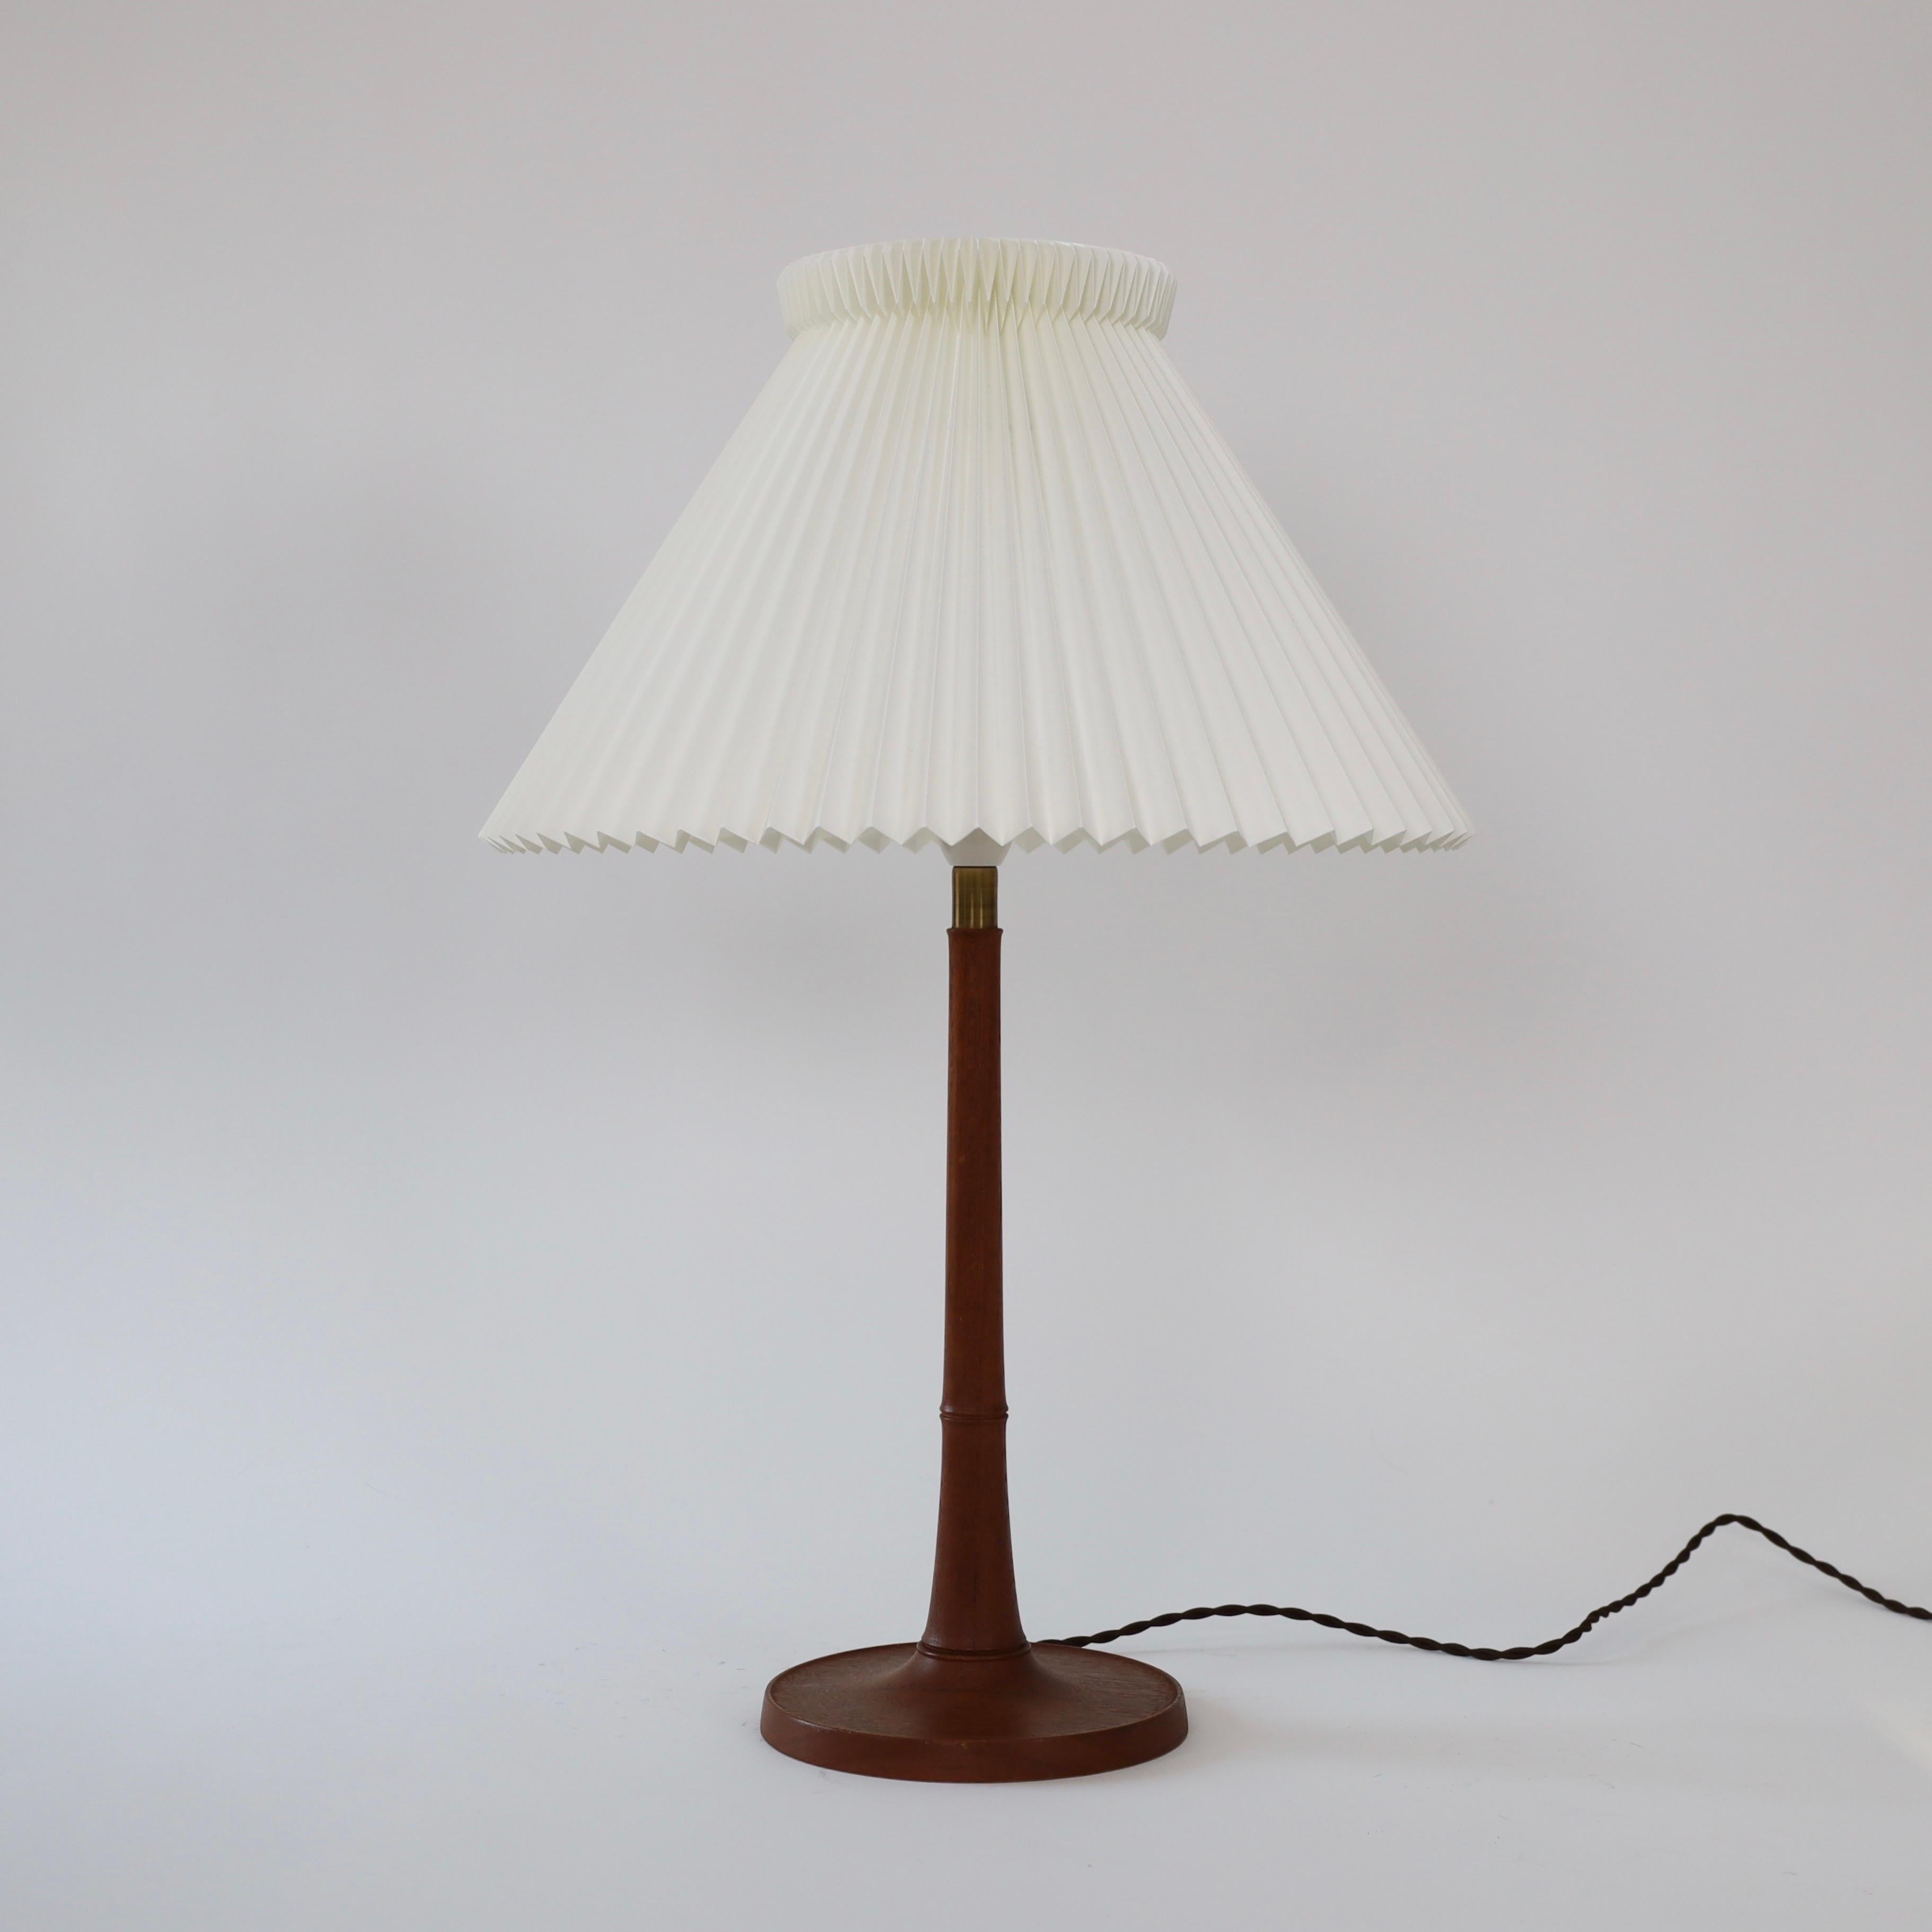 Danish Modern Le Klint oak wood table lamp, 1950s, Denmark For Sale 1